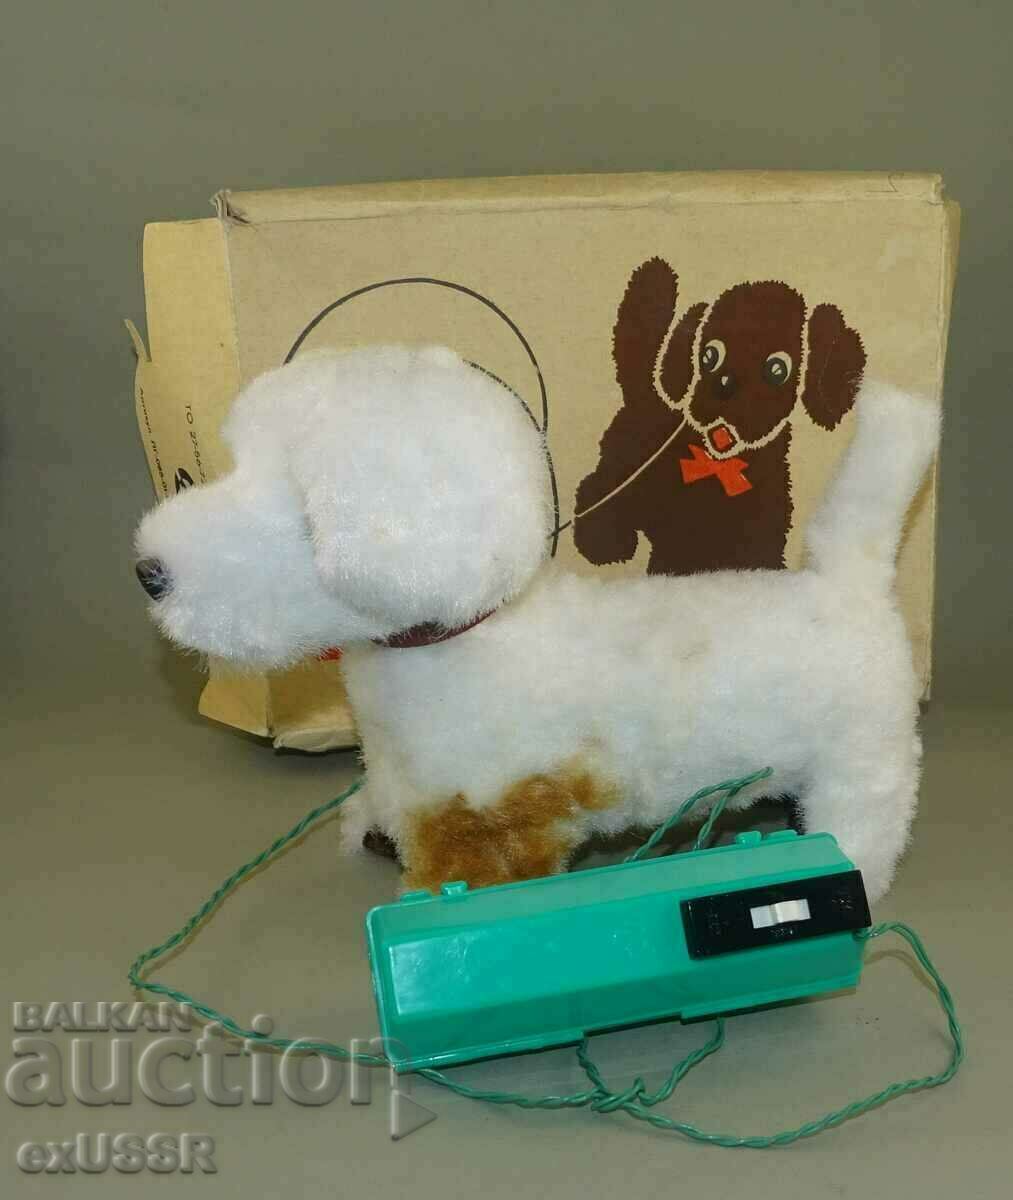 Ρωσικό ηλεκτρικό παιχνίδι σε κουτί, τηλεχειριστήριο μπαταρίας σκύλου